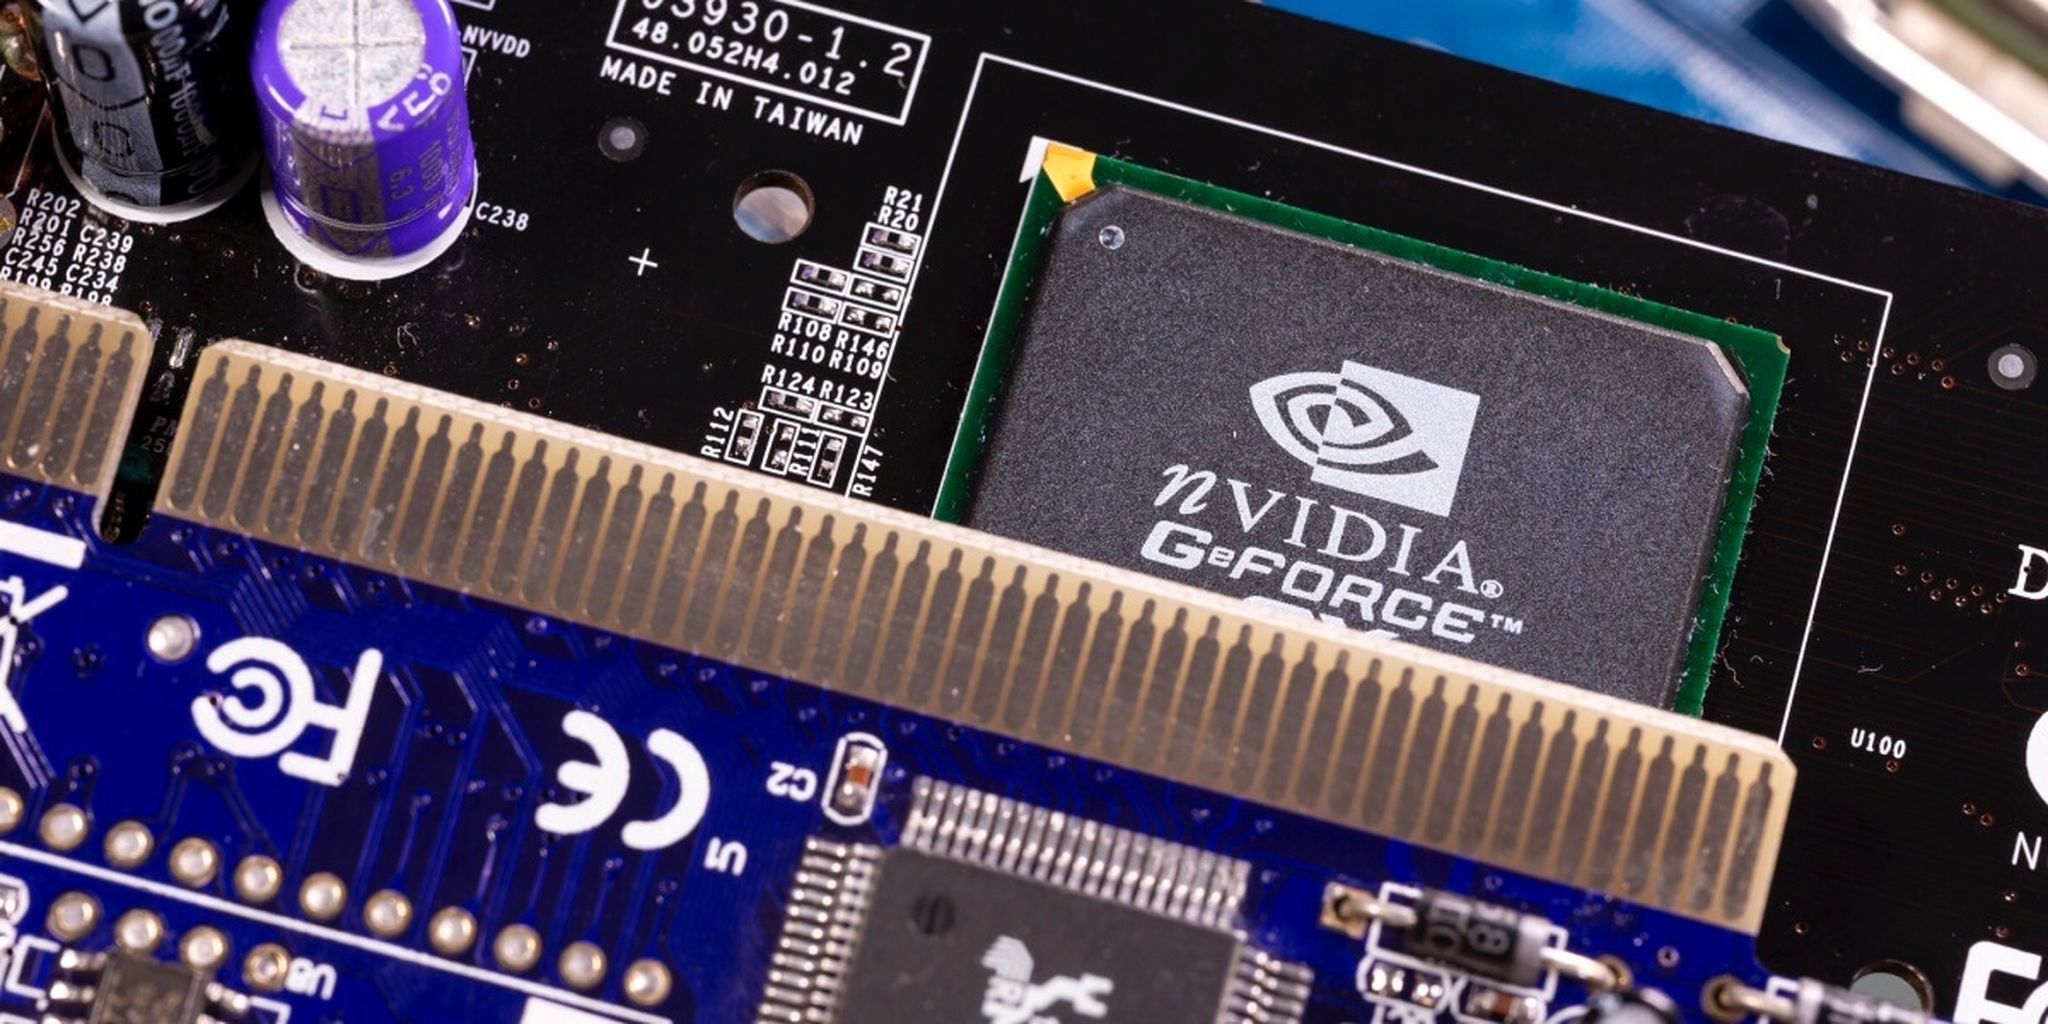 Lukt het Nvidia om aan de hooggespannen verwachtingen te voldoen?